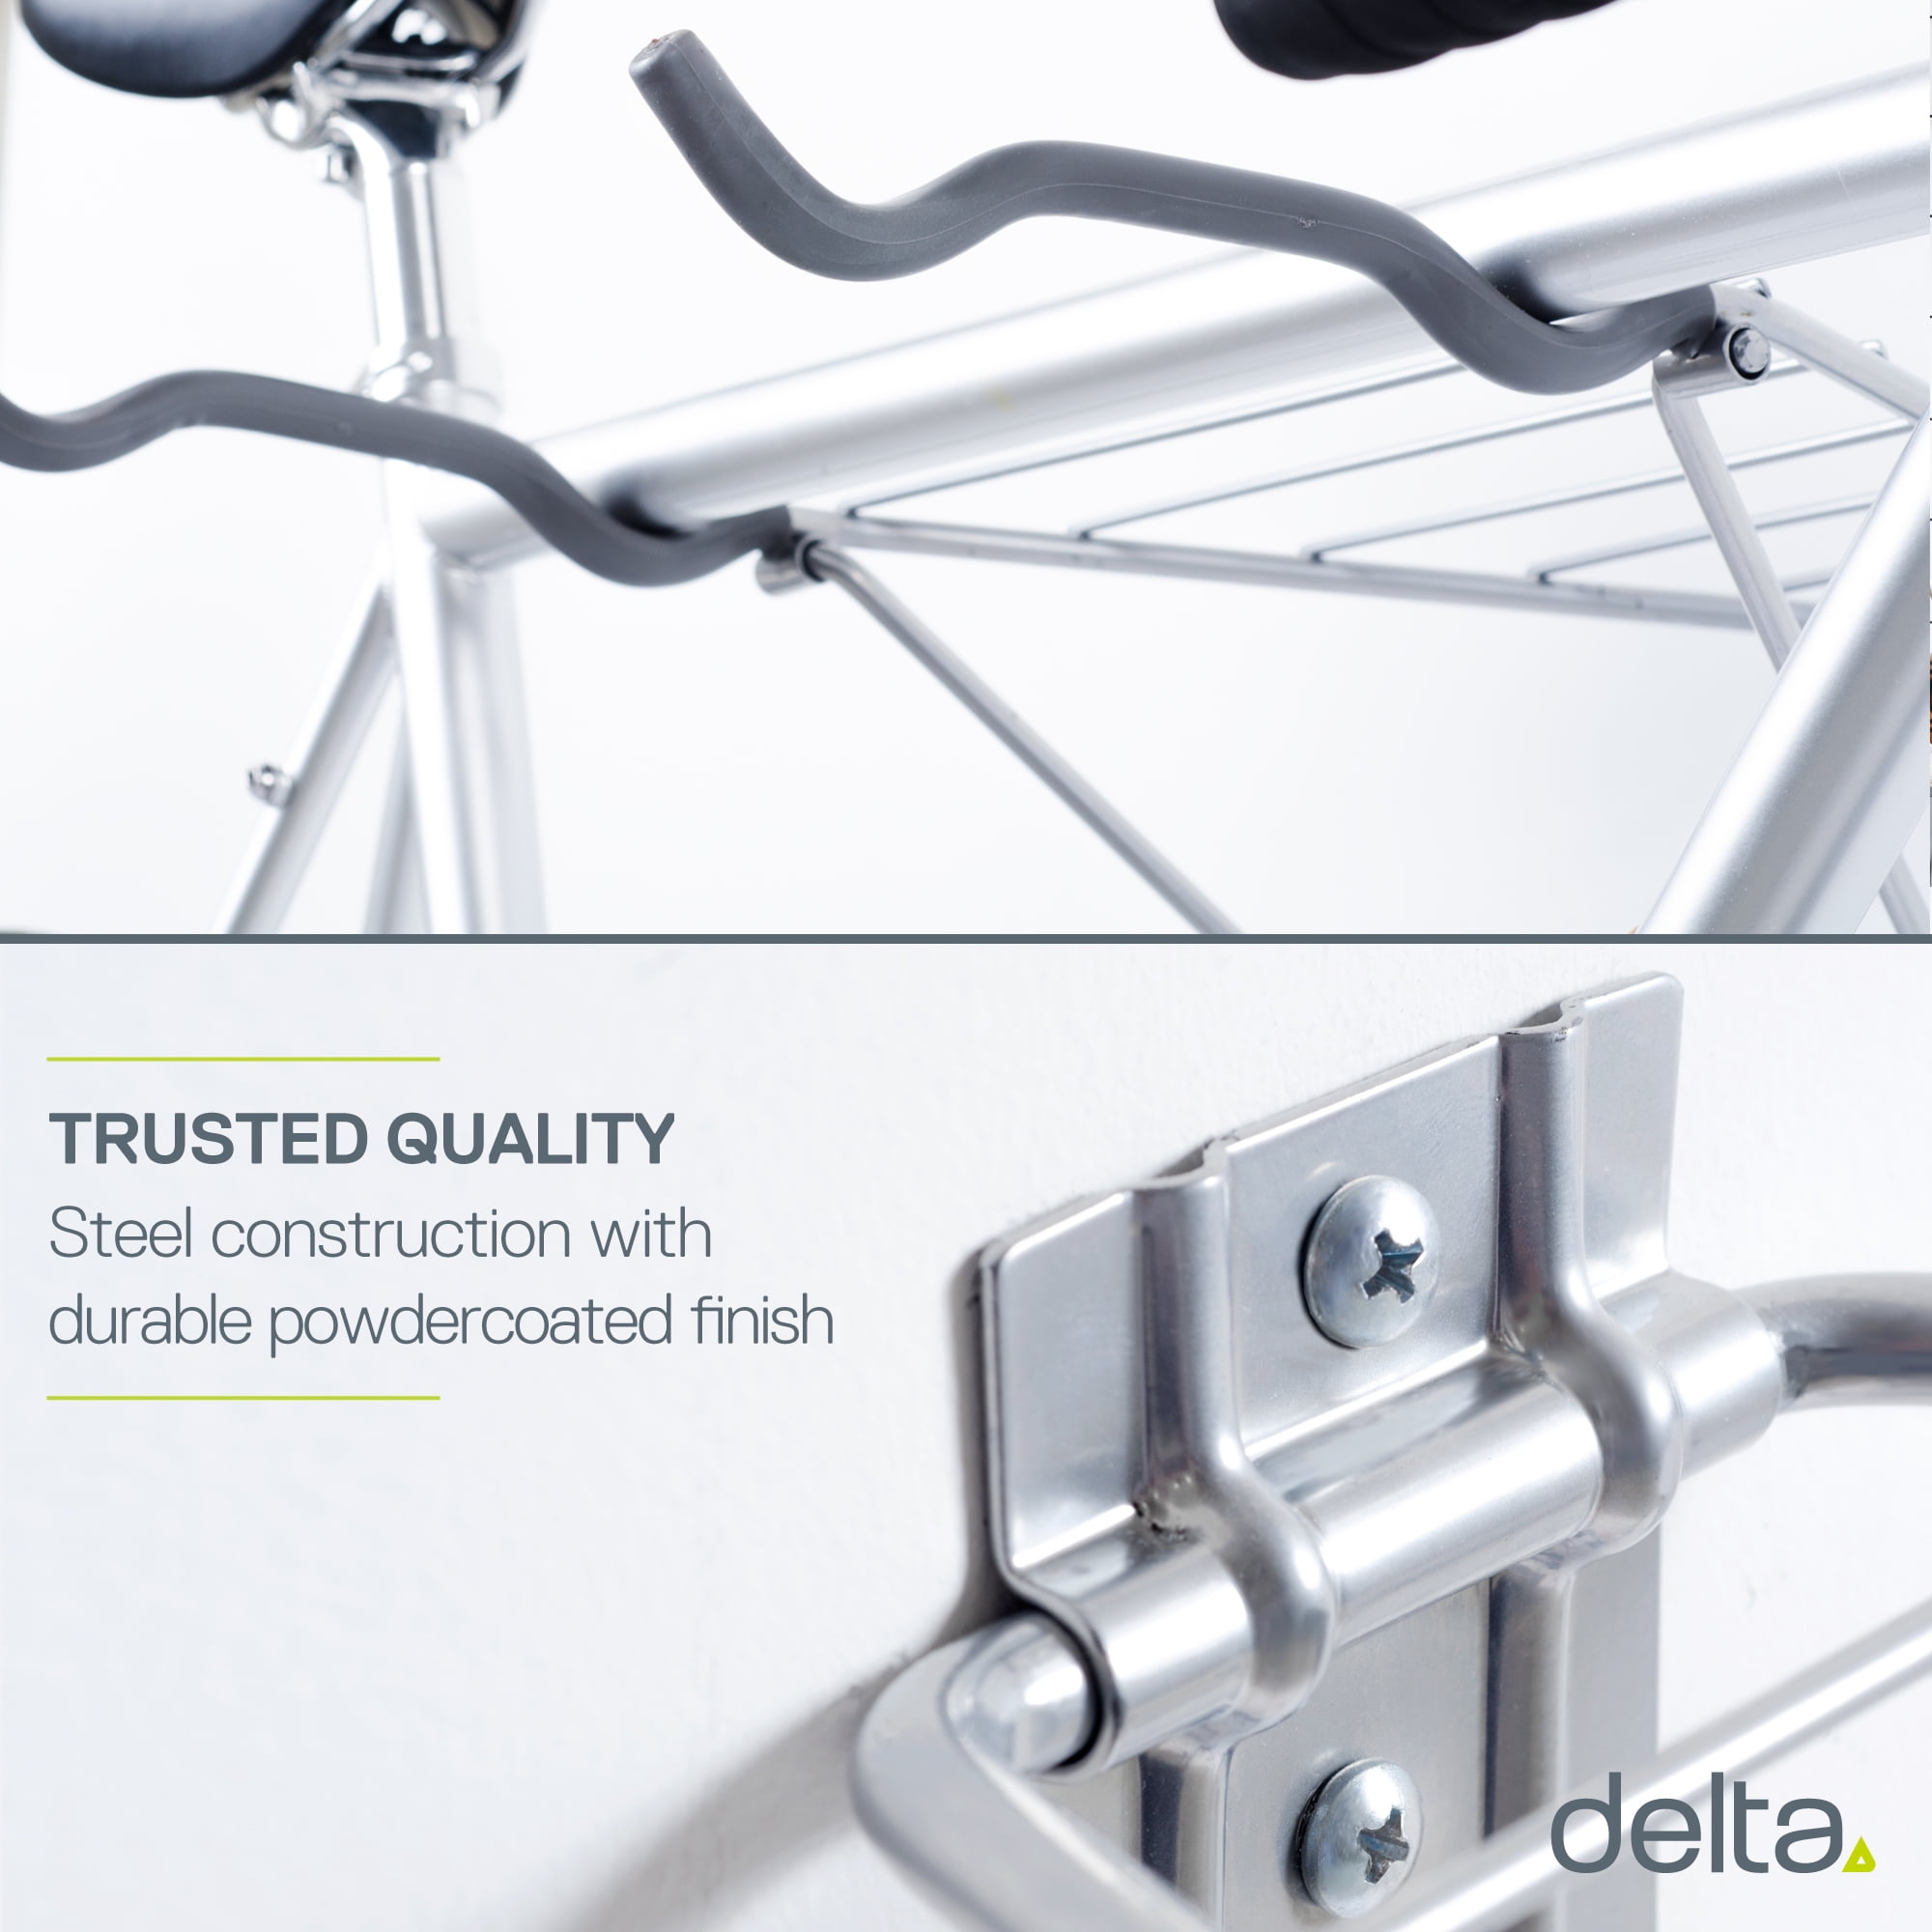 delta two bike folding rack